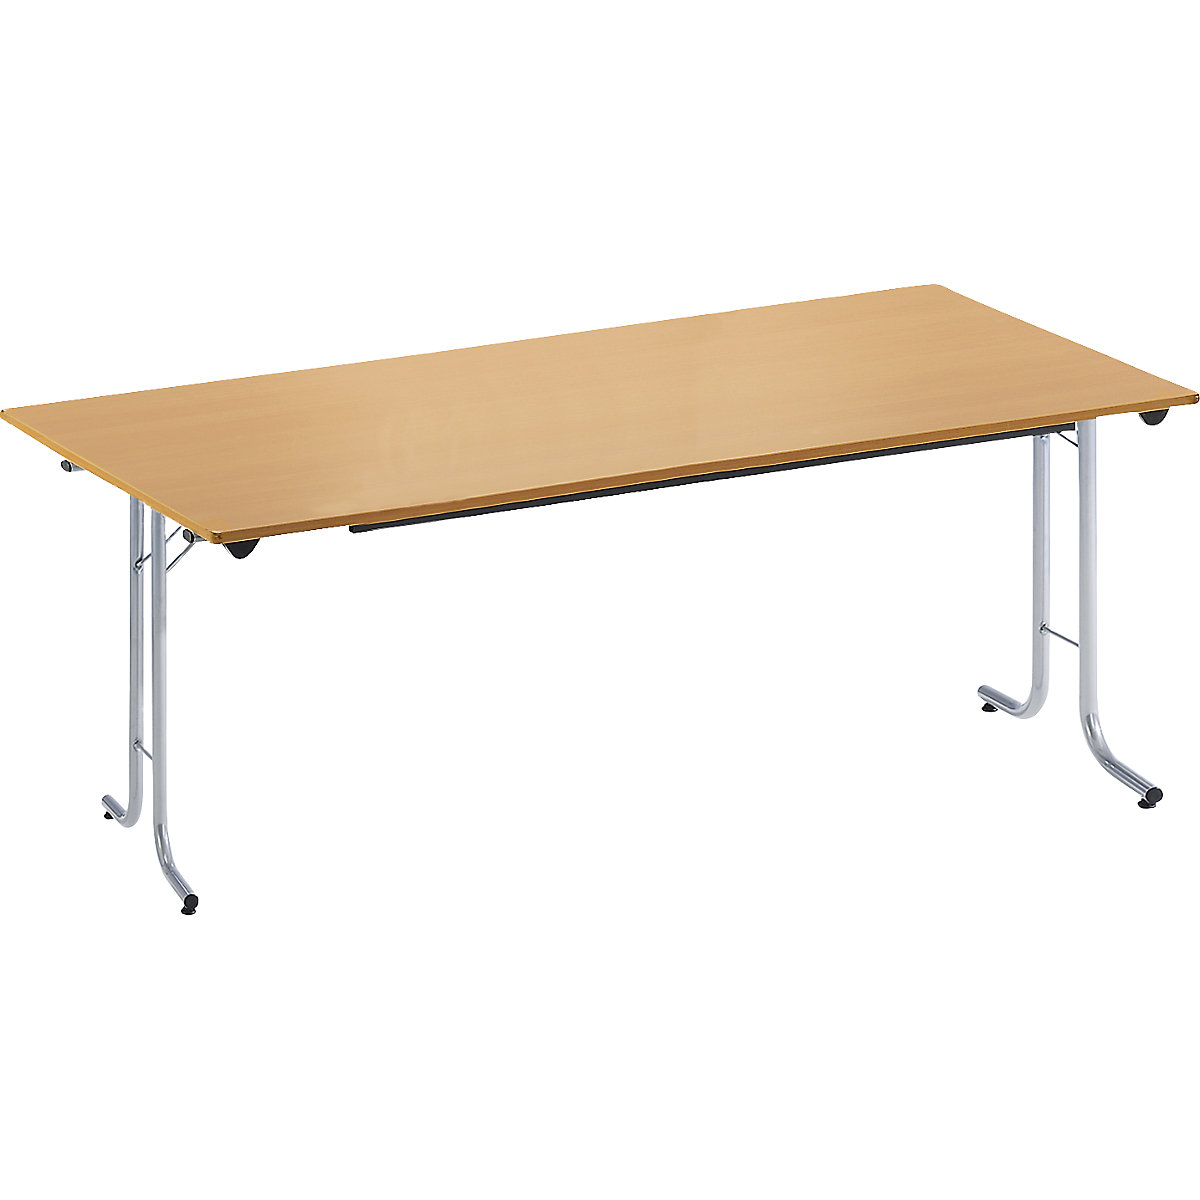 Sklápací stôl, so zaoblenými hranami, podstavec z kruhovej rúrky, tvar dosky obdĺžnikový, 1600 x 700 mm, podstavec strieborná, doska vzor buk-11